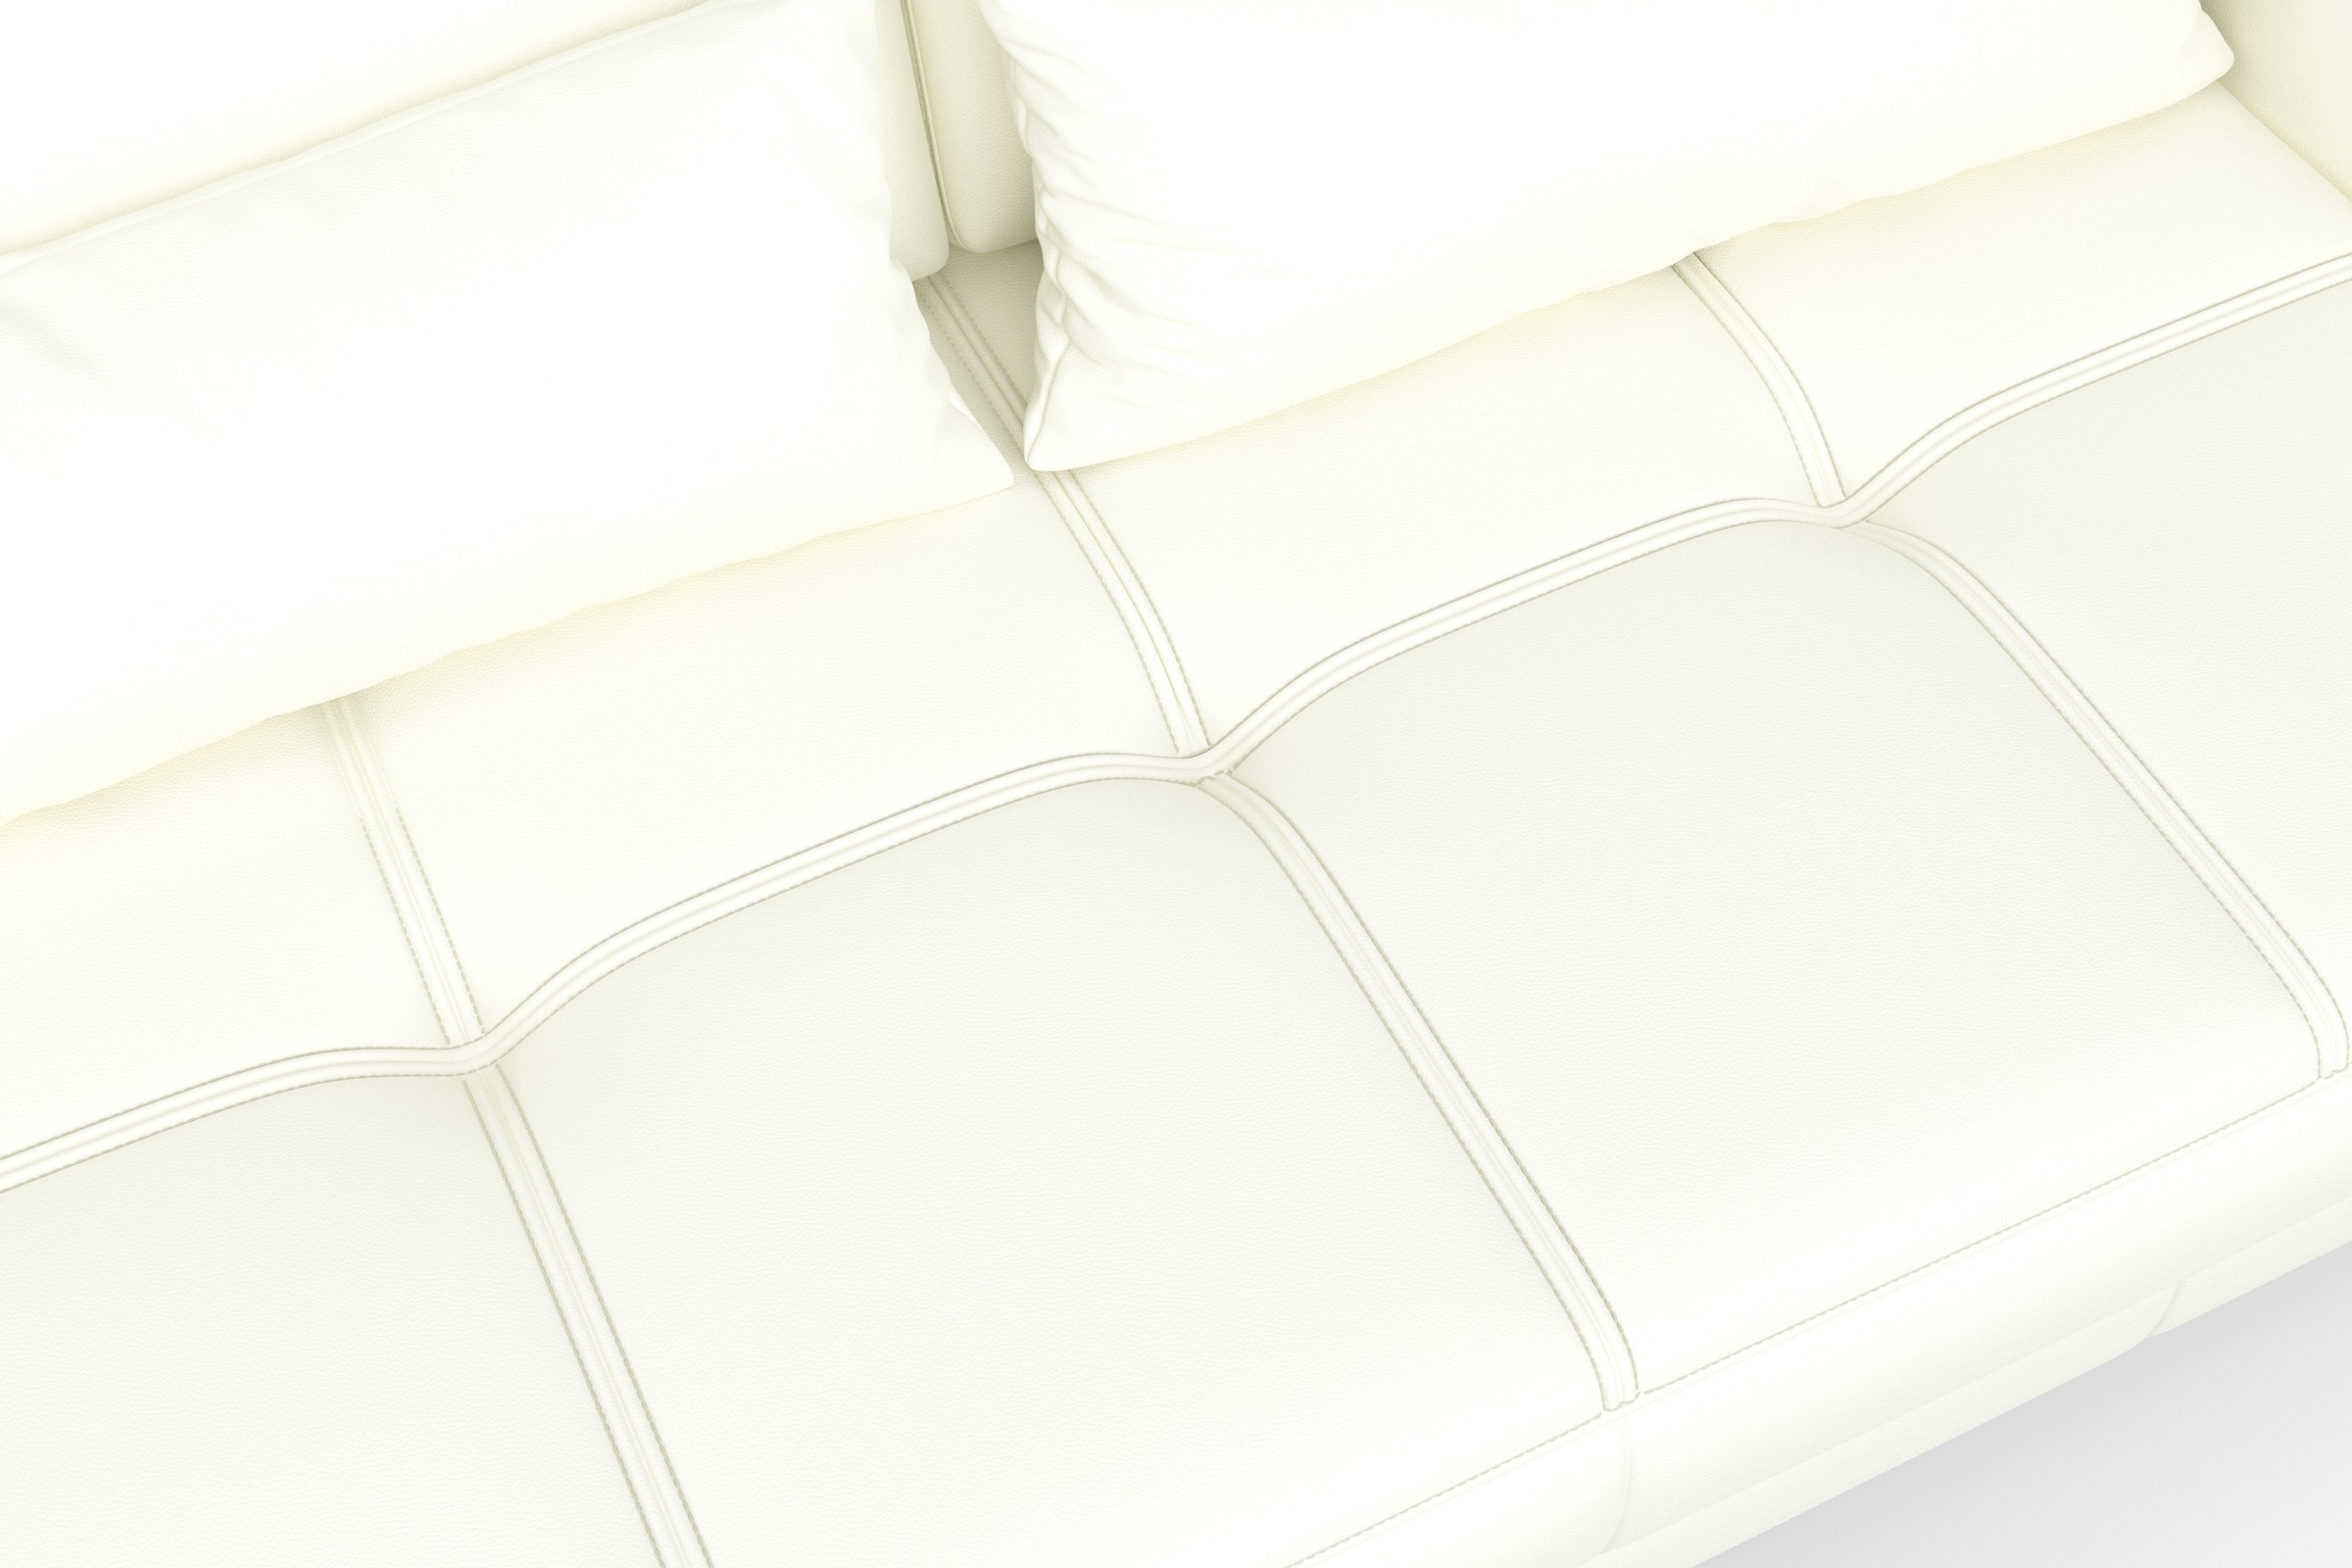 sit&more Ecksofa »Bendigo L-Form«, inklusive Sitztiefenverstellung, Bodenfreiheit 15 cm, 2 Fussfarben